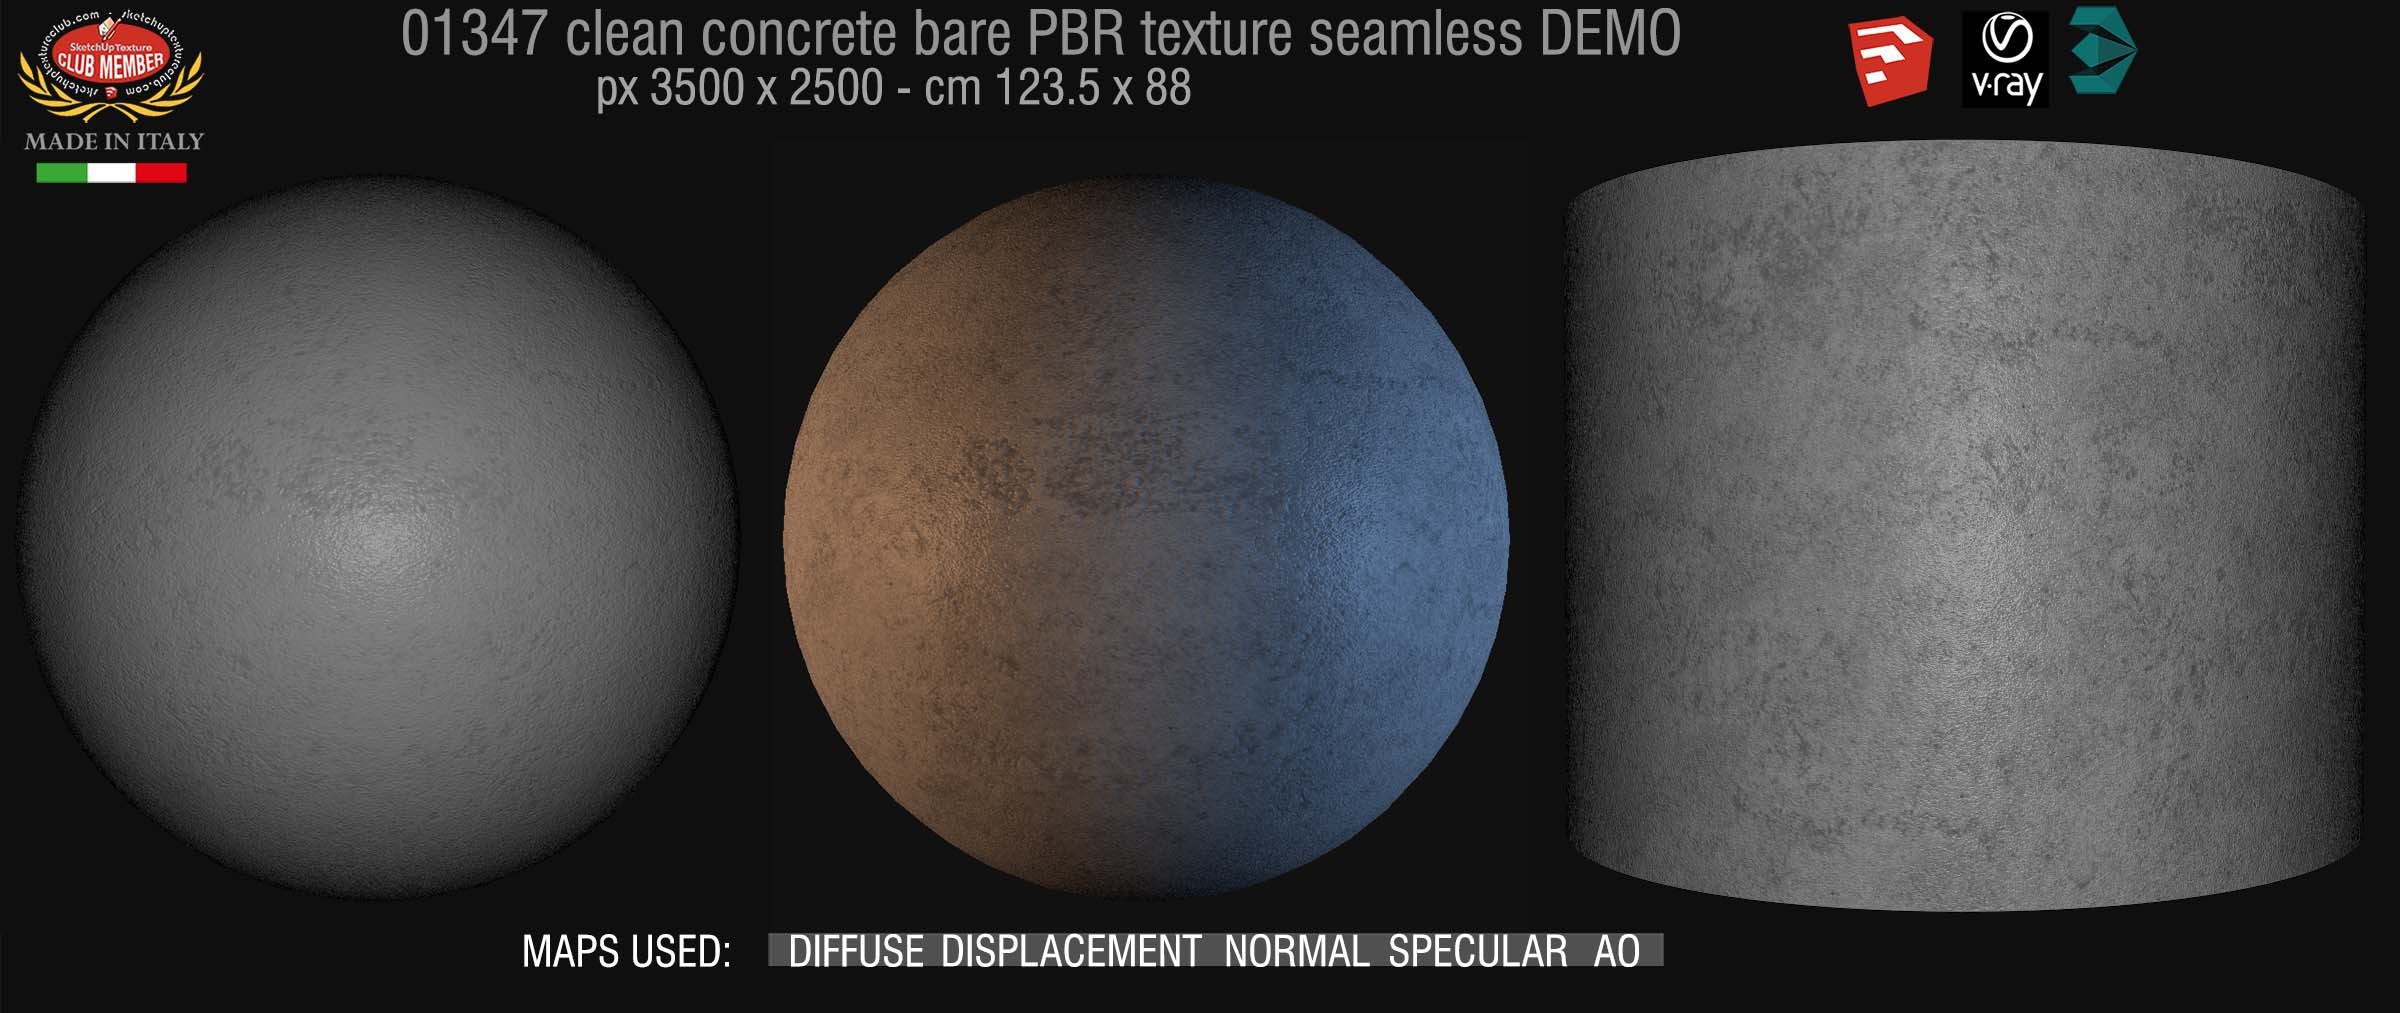 01347 Concrete bare clean PBR texture seamless DEMO